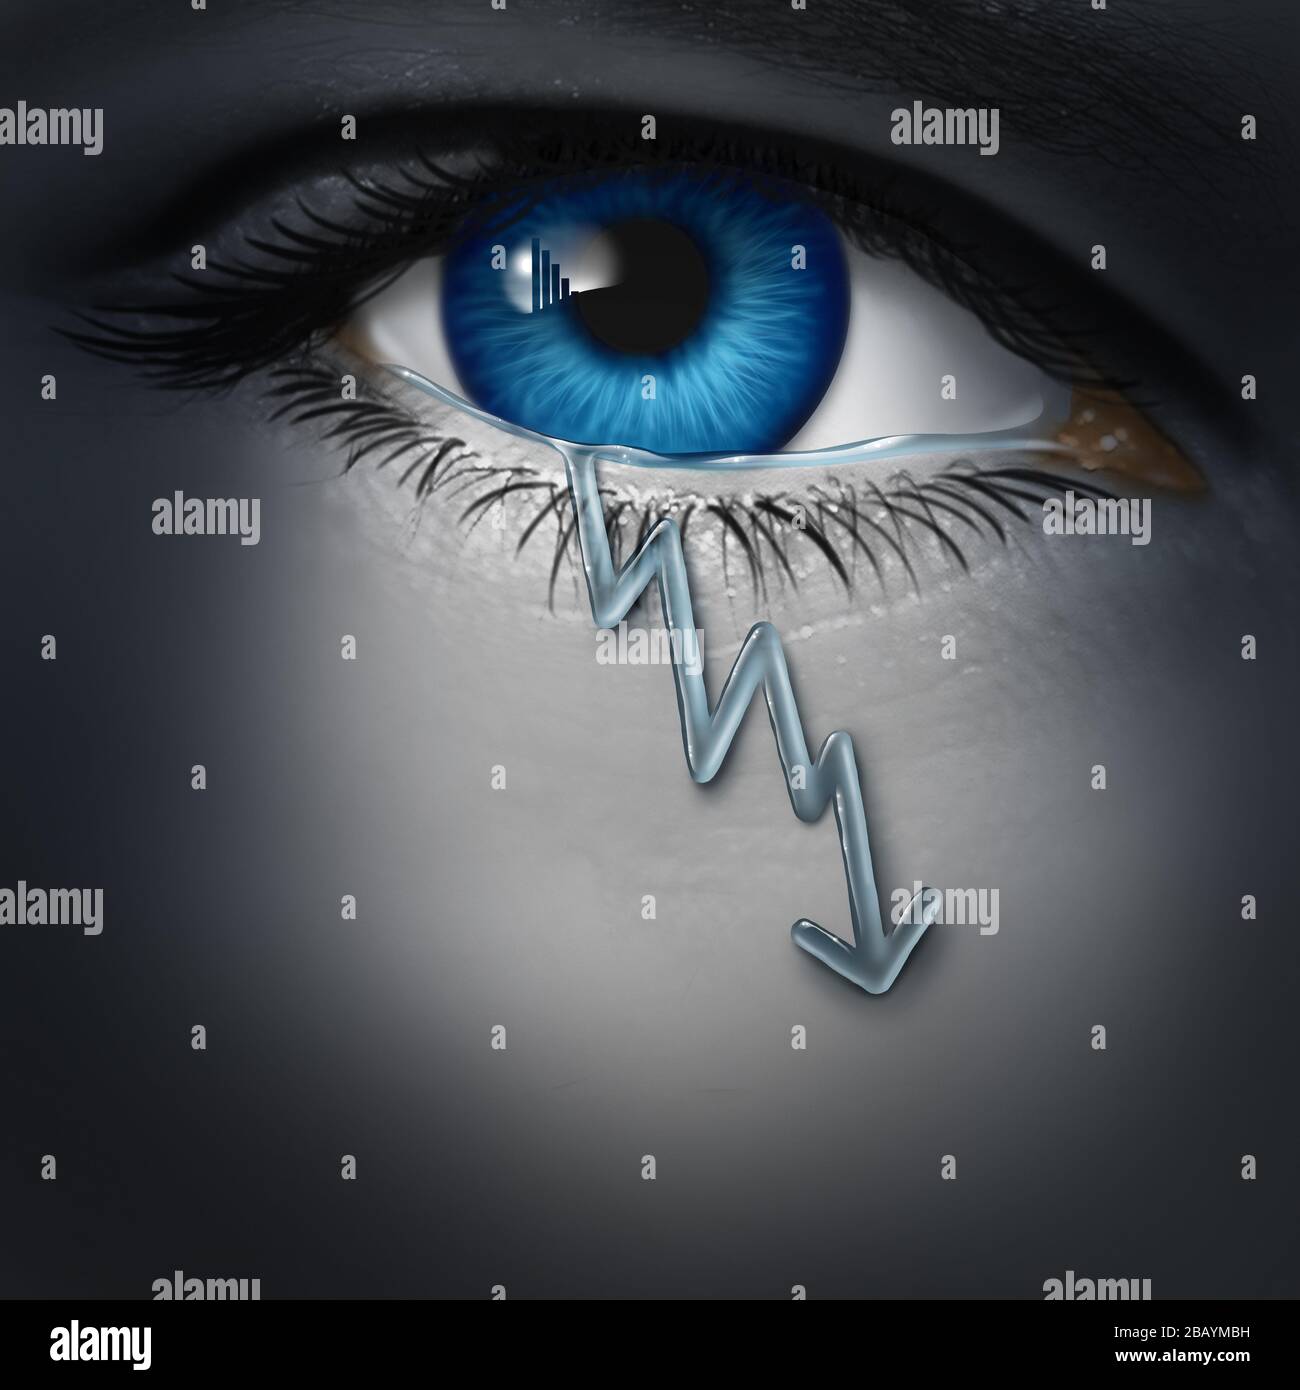 La depresión económica como un inversor deprimido con una caída de la lágrima en forma de gráfico financiero en caída como símbolo de recesión y economía fracasada. Foto de stock